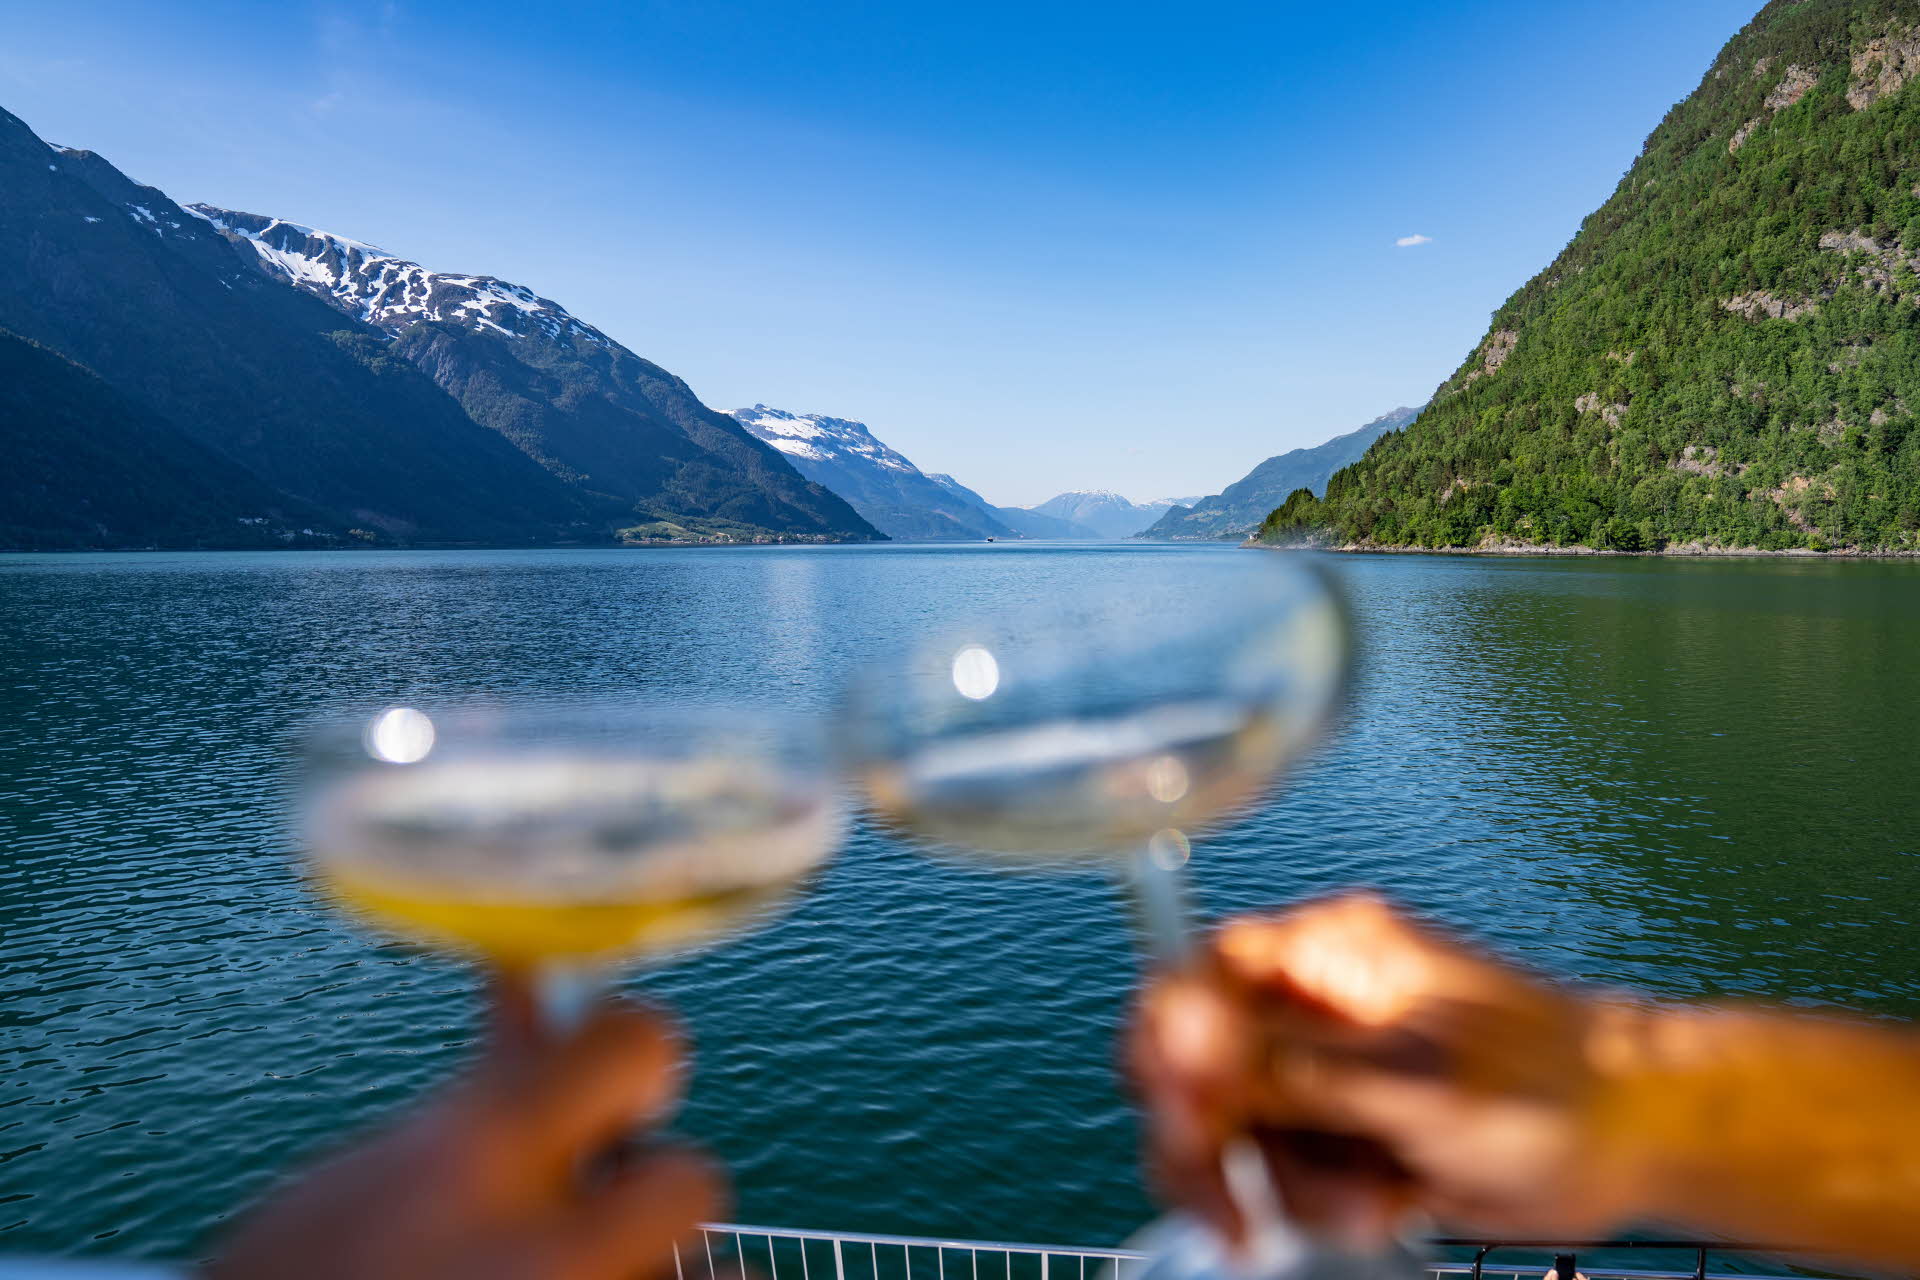 双手举起香槟酒杯，在哈丹格尔峡湾 (Hardangerfjord) 用苹果酒祝酒